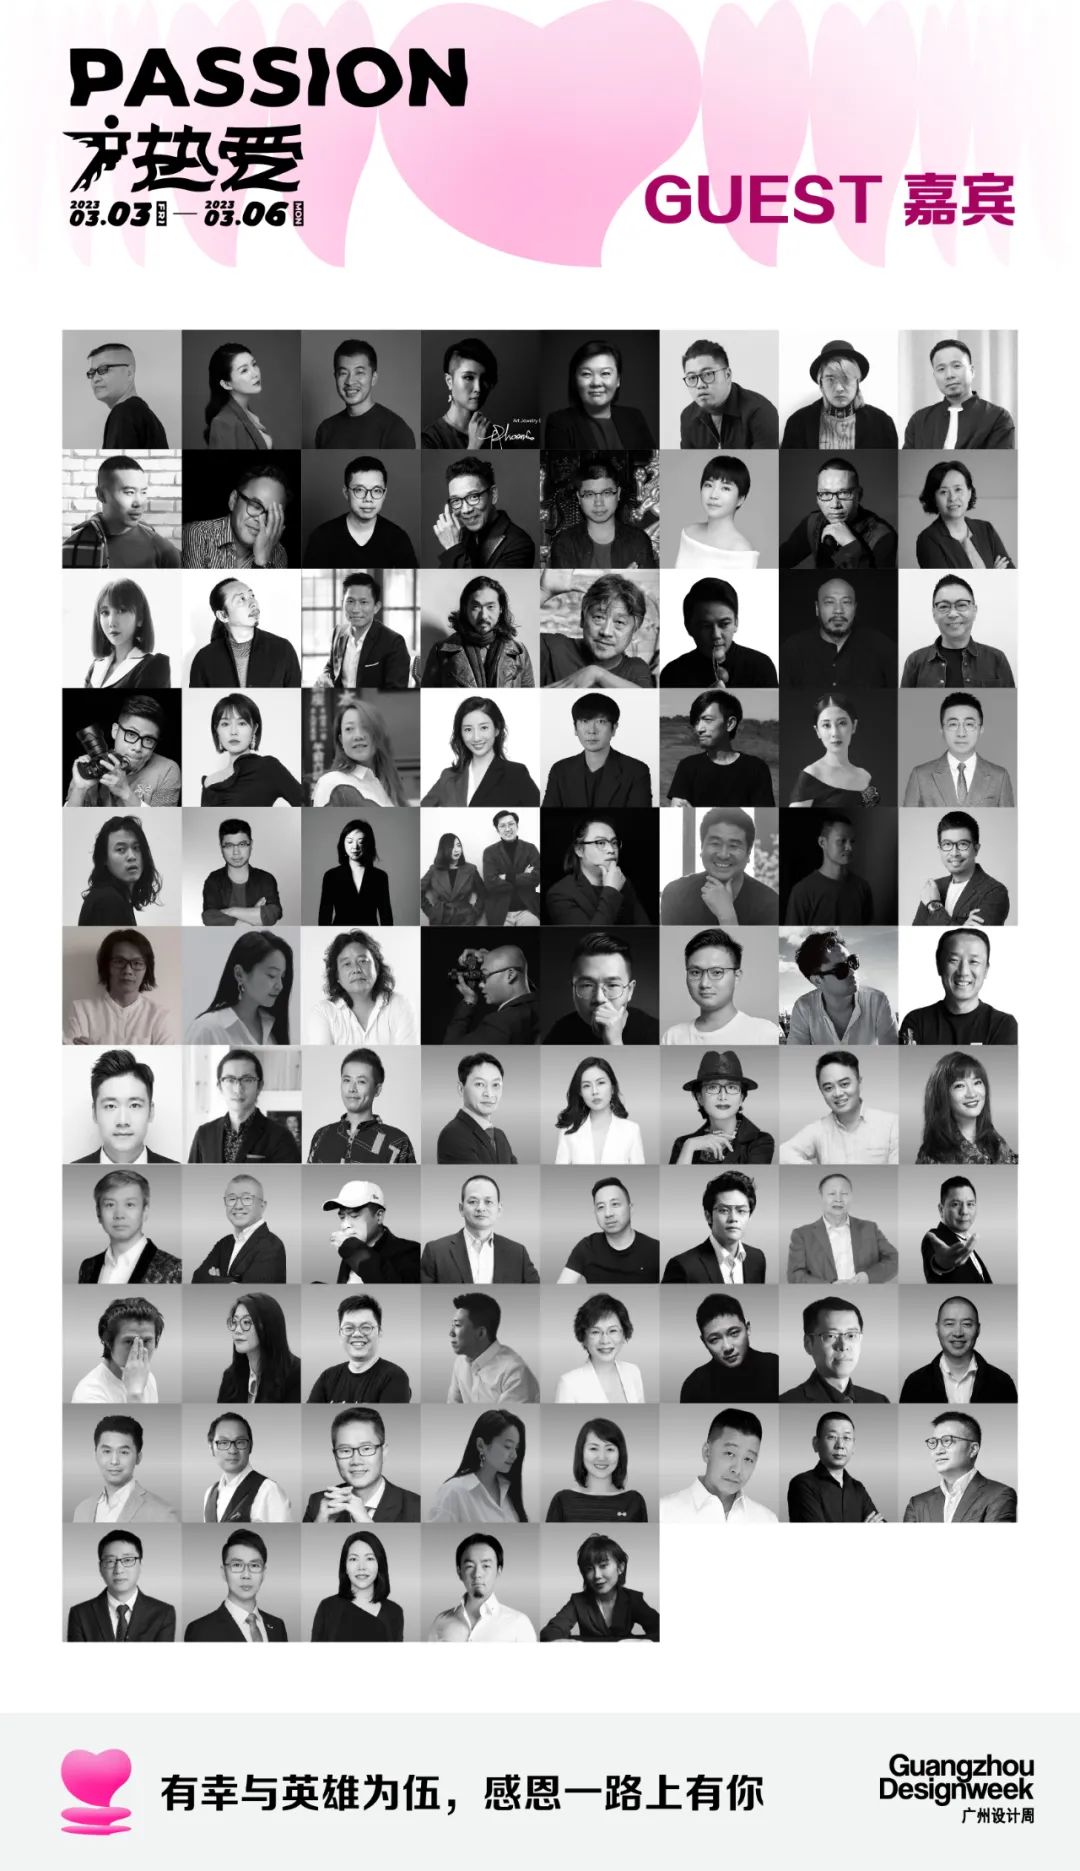 3月必逛的广州设计周，39个精彩亮点抢先剧透！